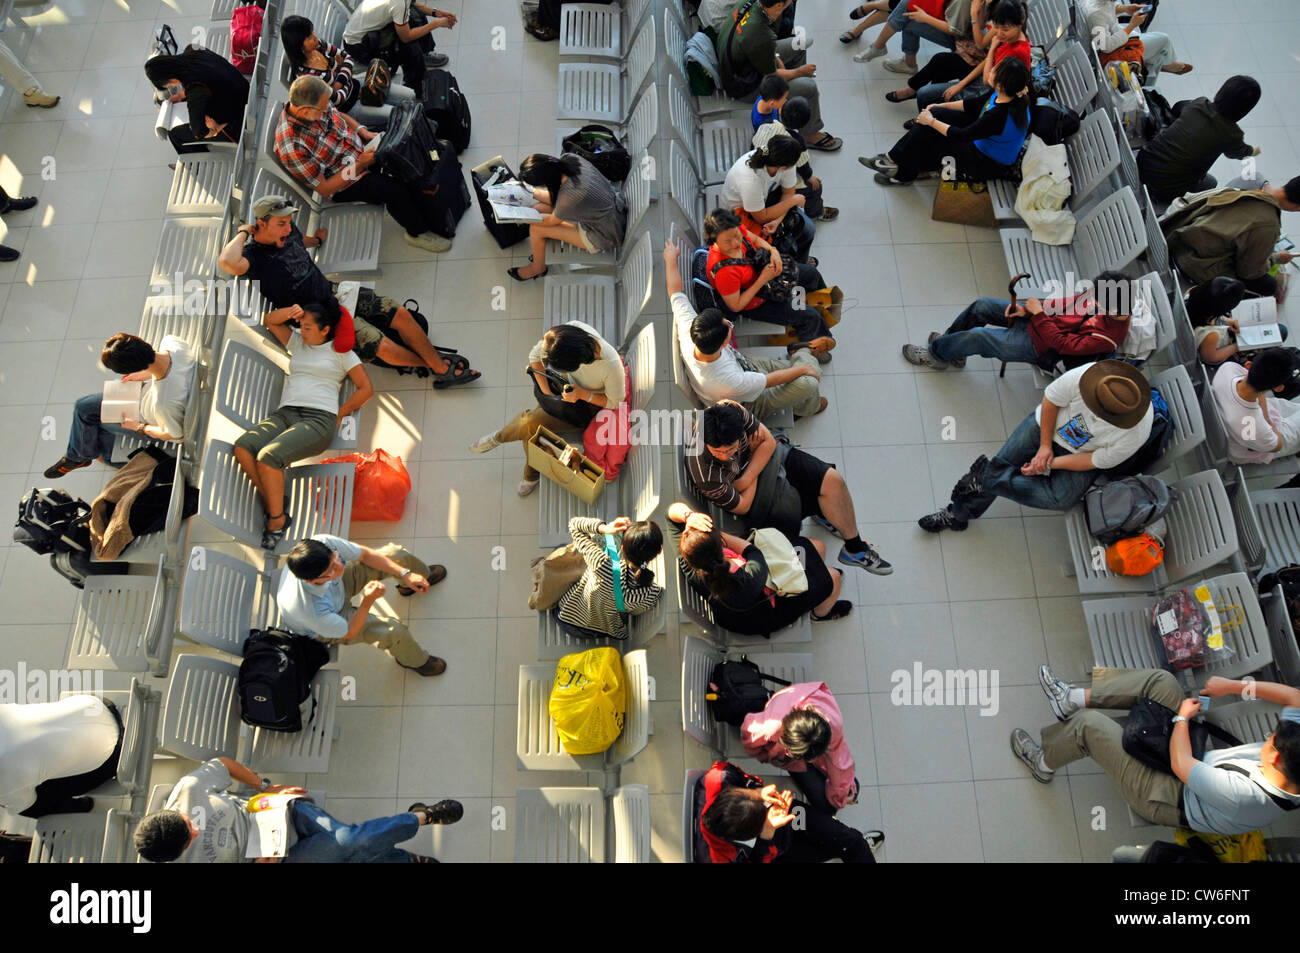 waiting passengers, Suvarnabhumi International Airport, Thailand, Bangkok Stock Photo